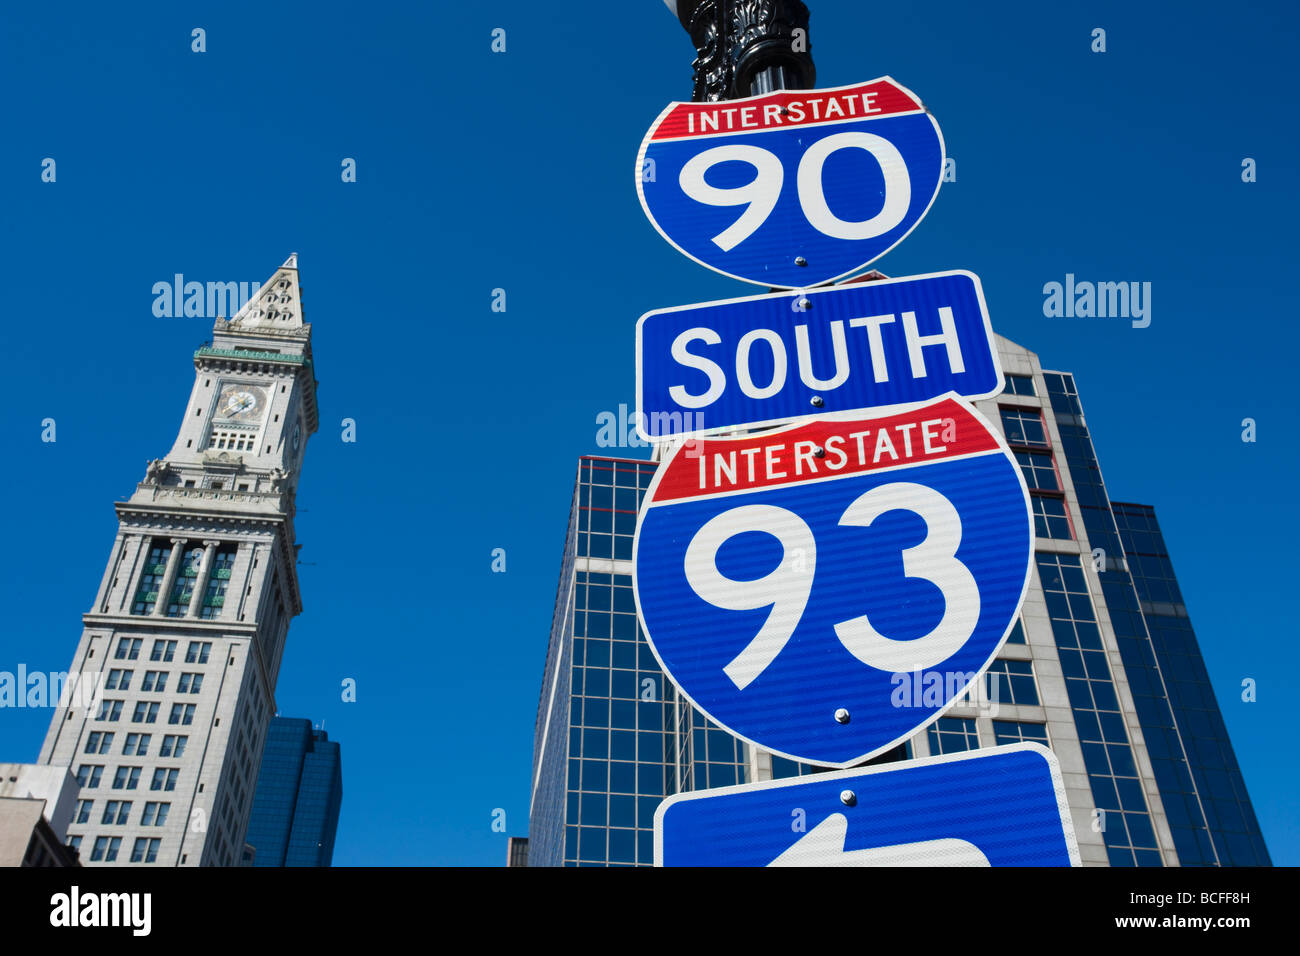 États-unis, Massachusetts, Boston, Atlantic Avenue Greenway, douanes, et de la signalisation routière Banque D'Images